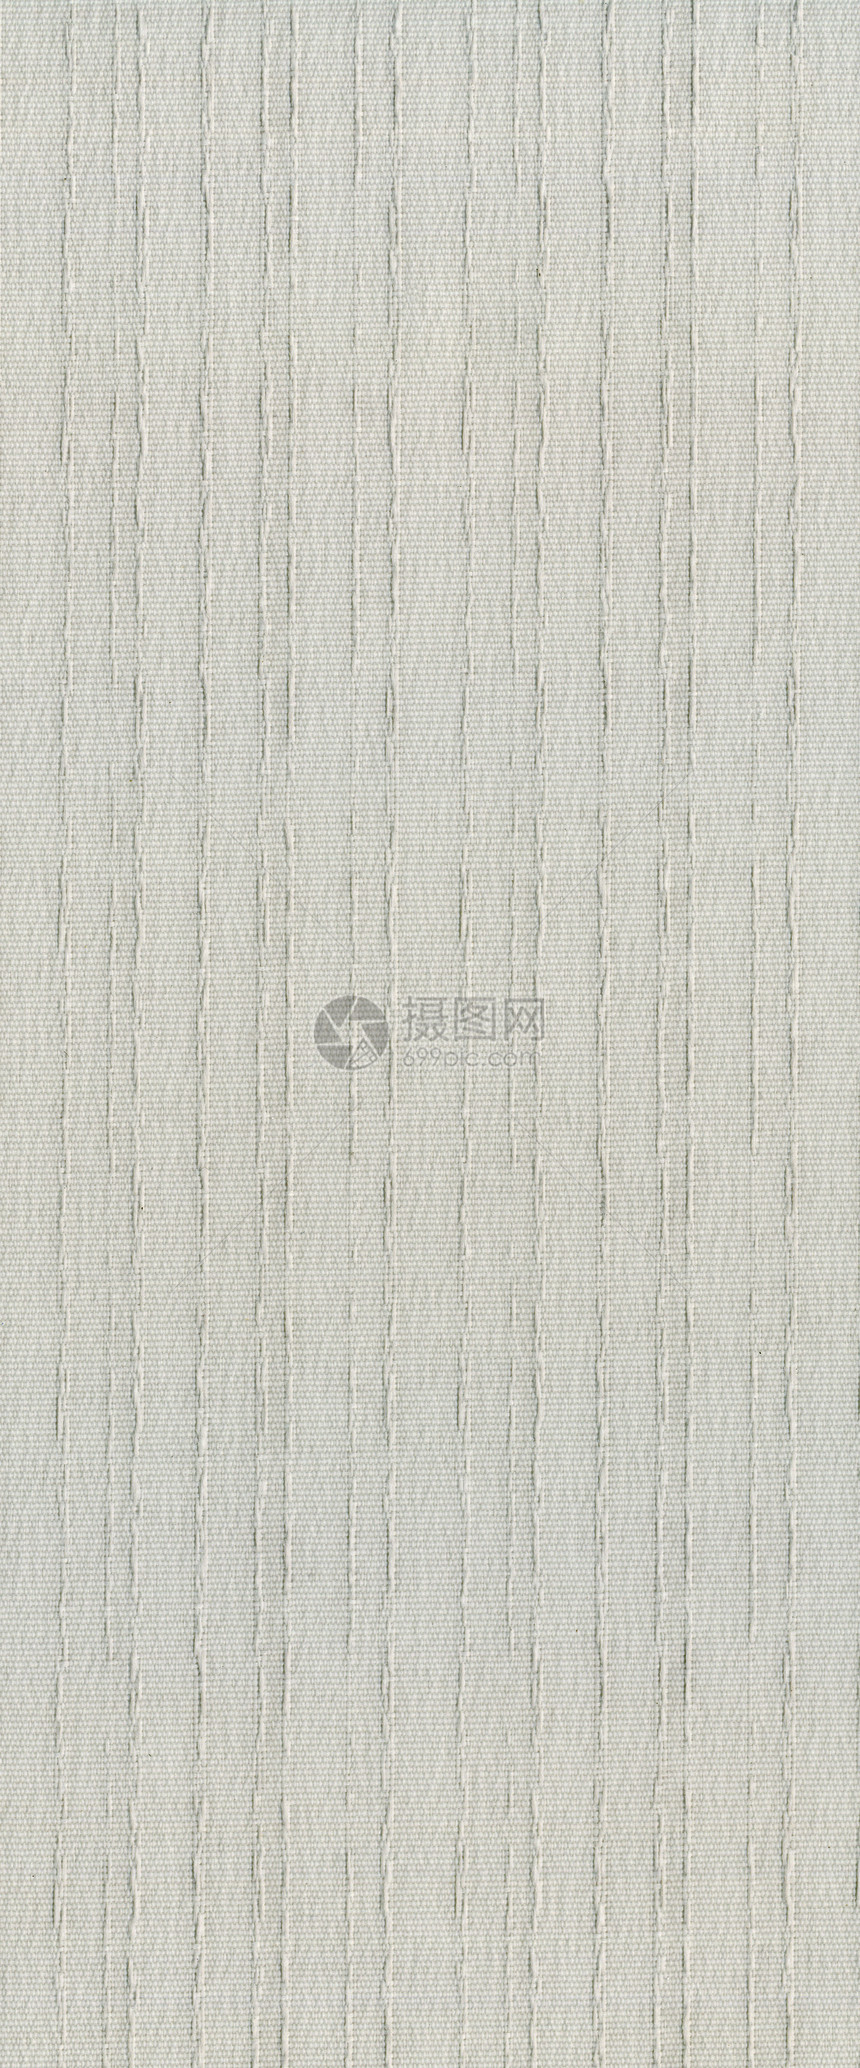 灰色纤维纹理织物生产材料麻布帆布编织棉布布料亚麻折痕图片